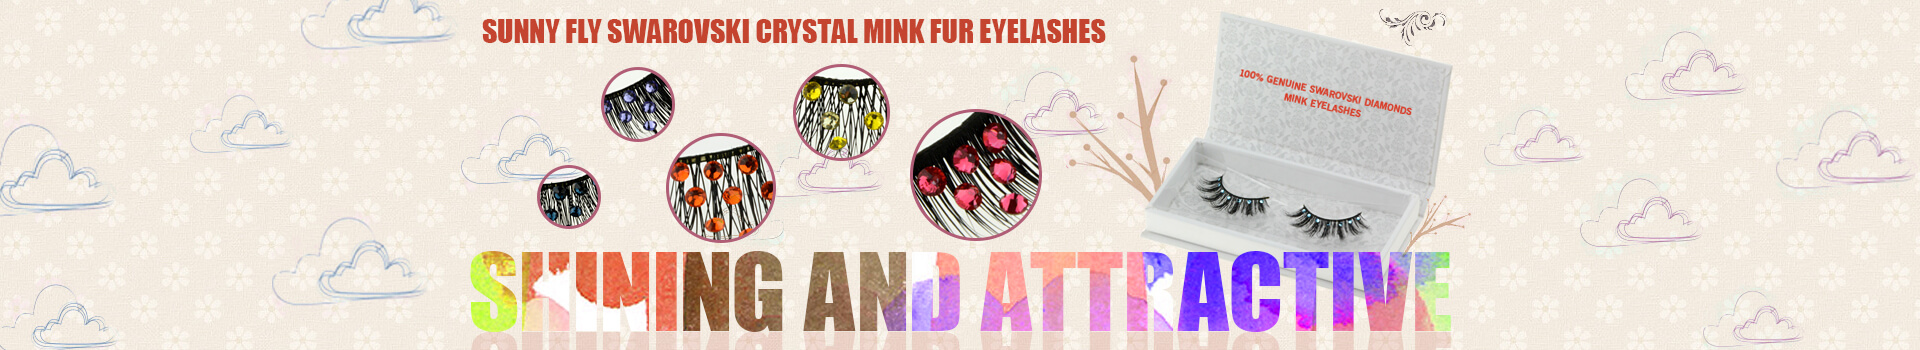 Swarovski Crystal Mink Fur Eyelashes MS05